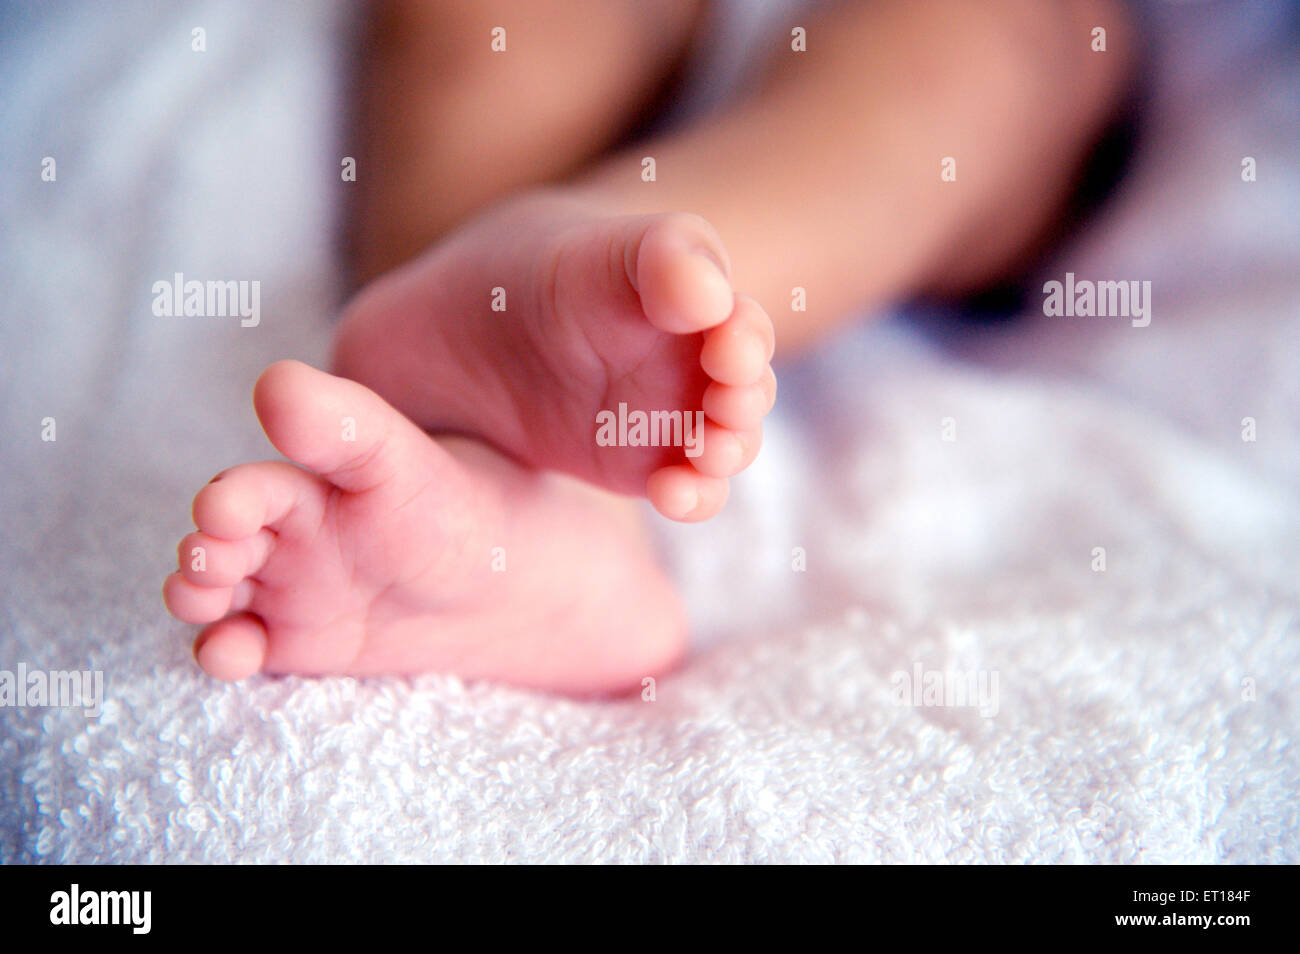 New Born Baby gambe - Modello di Rilascio # 736LA Foto Stock